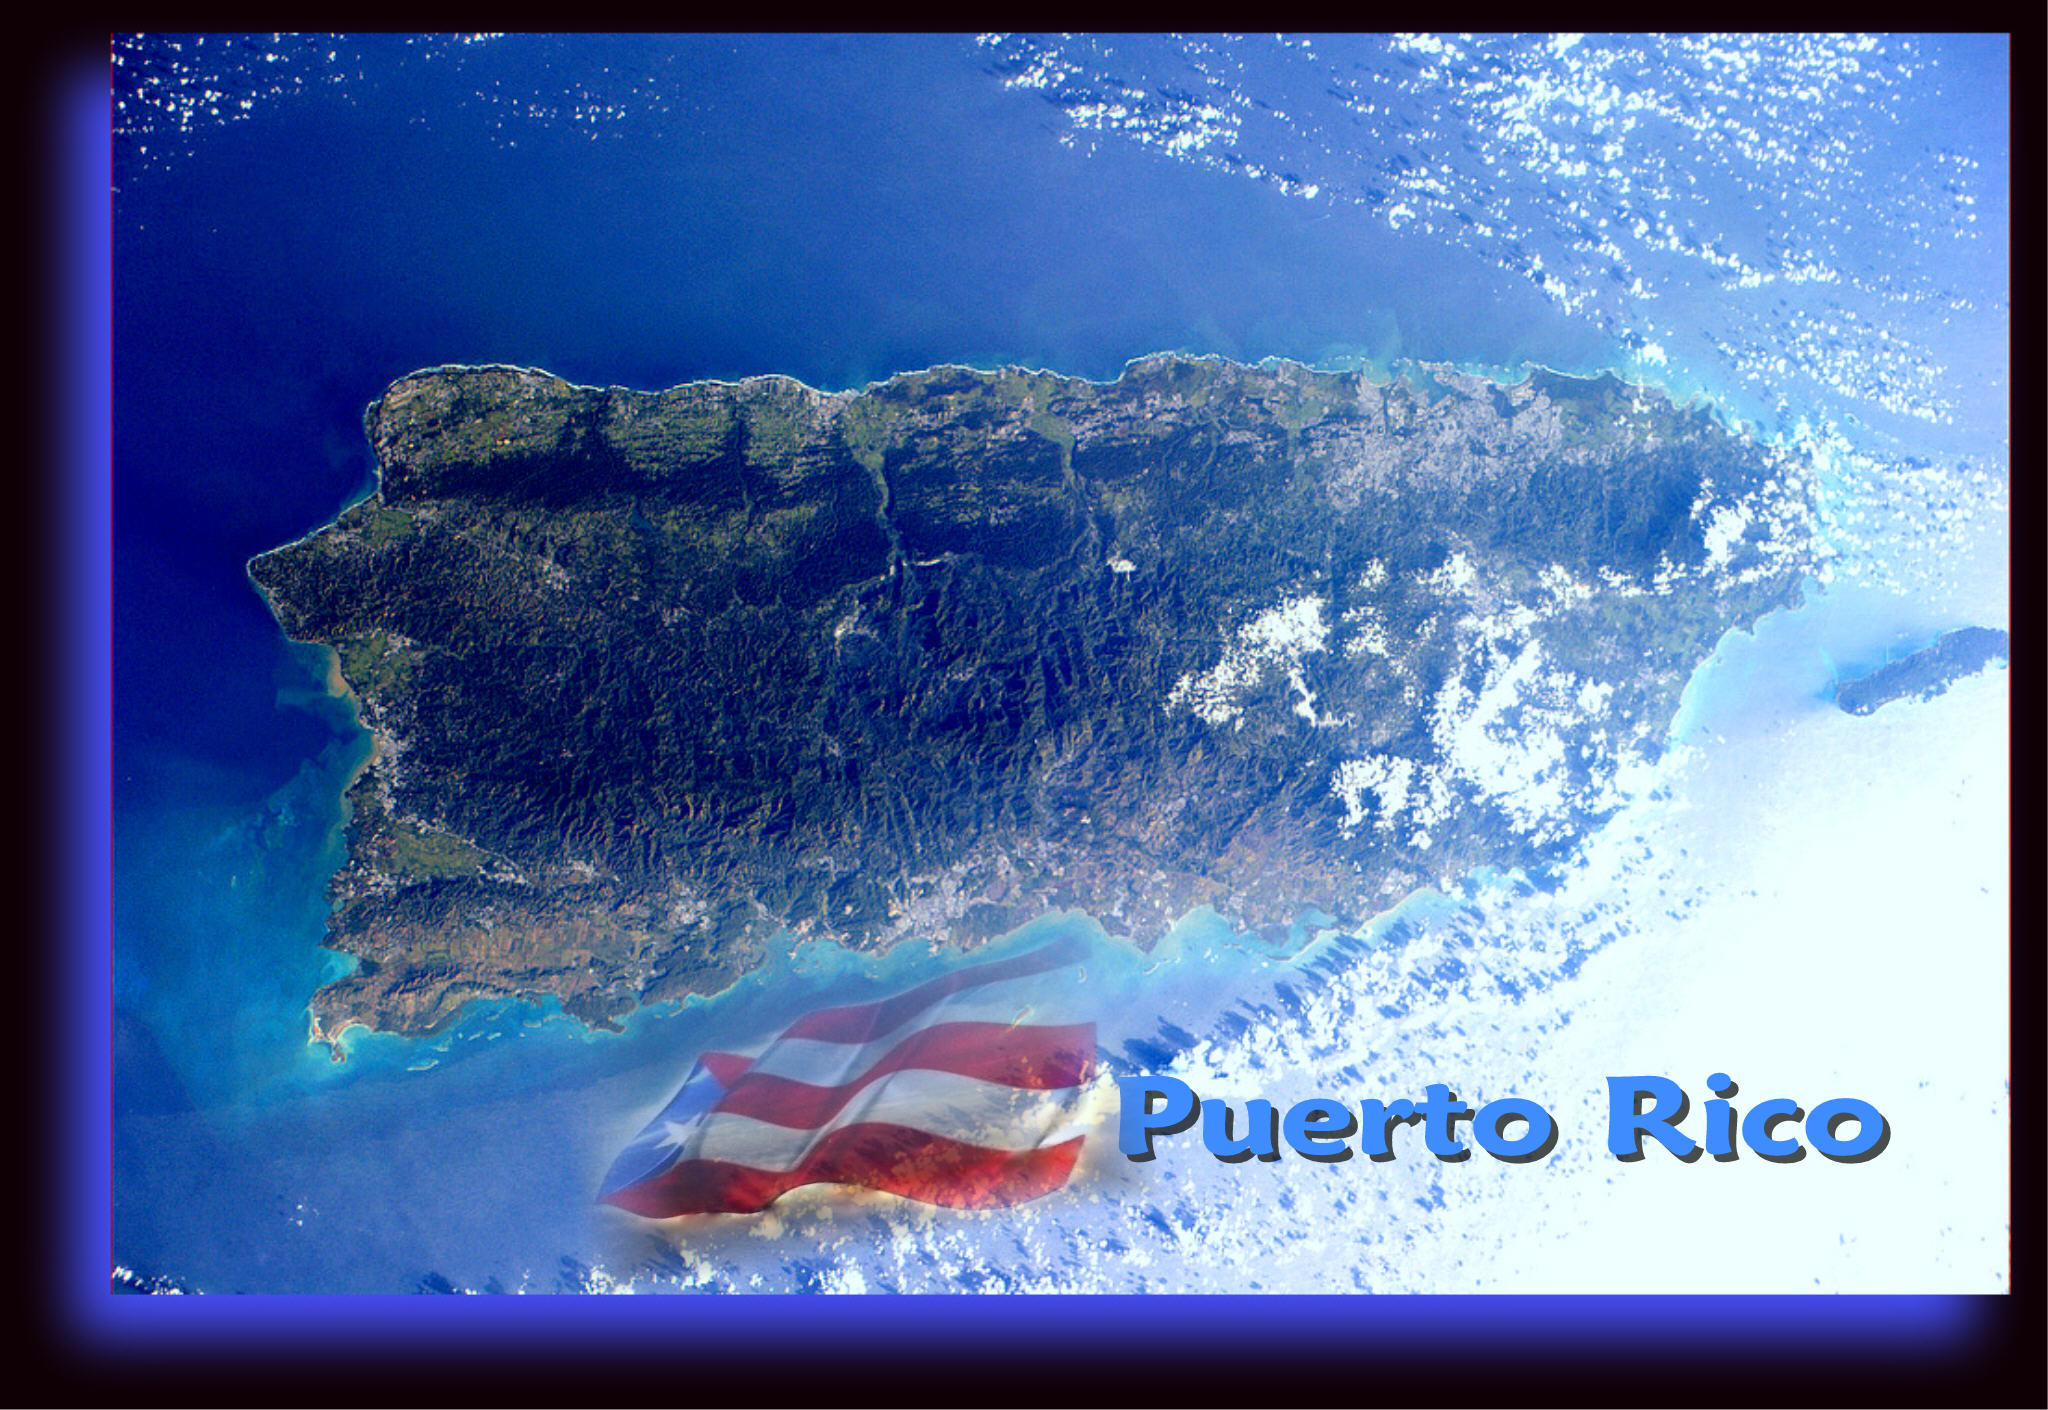 Puerto Rico Wallpapers Free Download  PixelsTalkNet